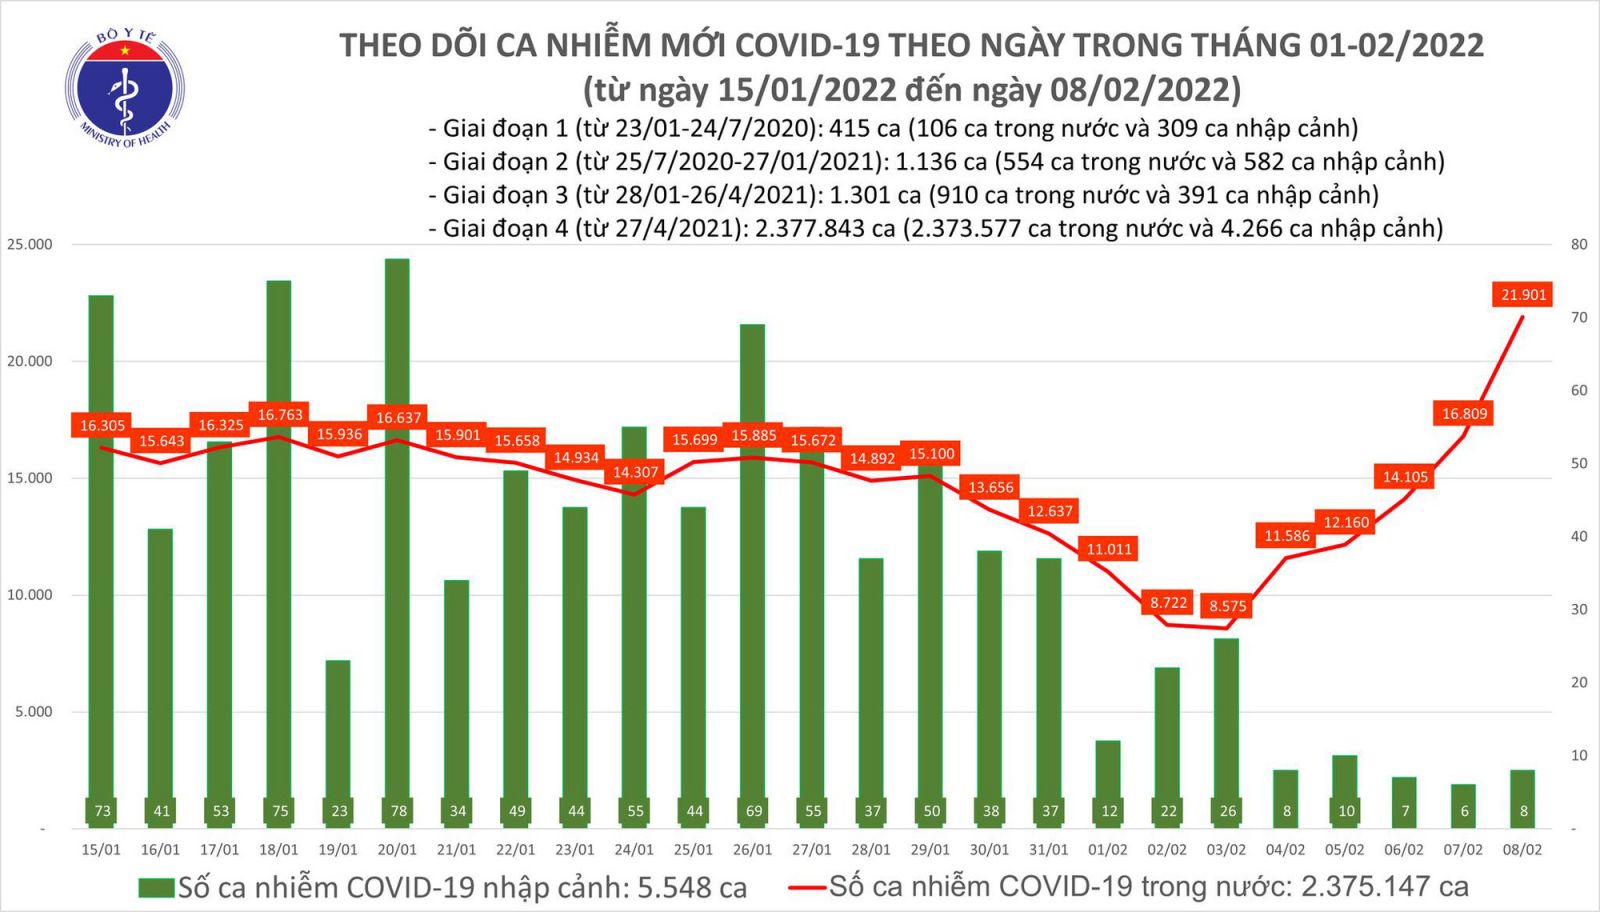 Ngày 8/2: Số ca COVID-19 tăng vọt, cả nước có 21.909 F0